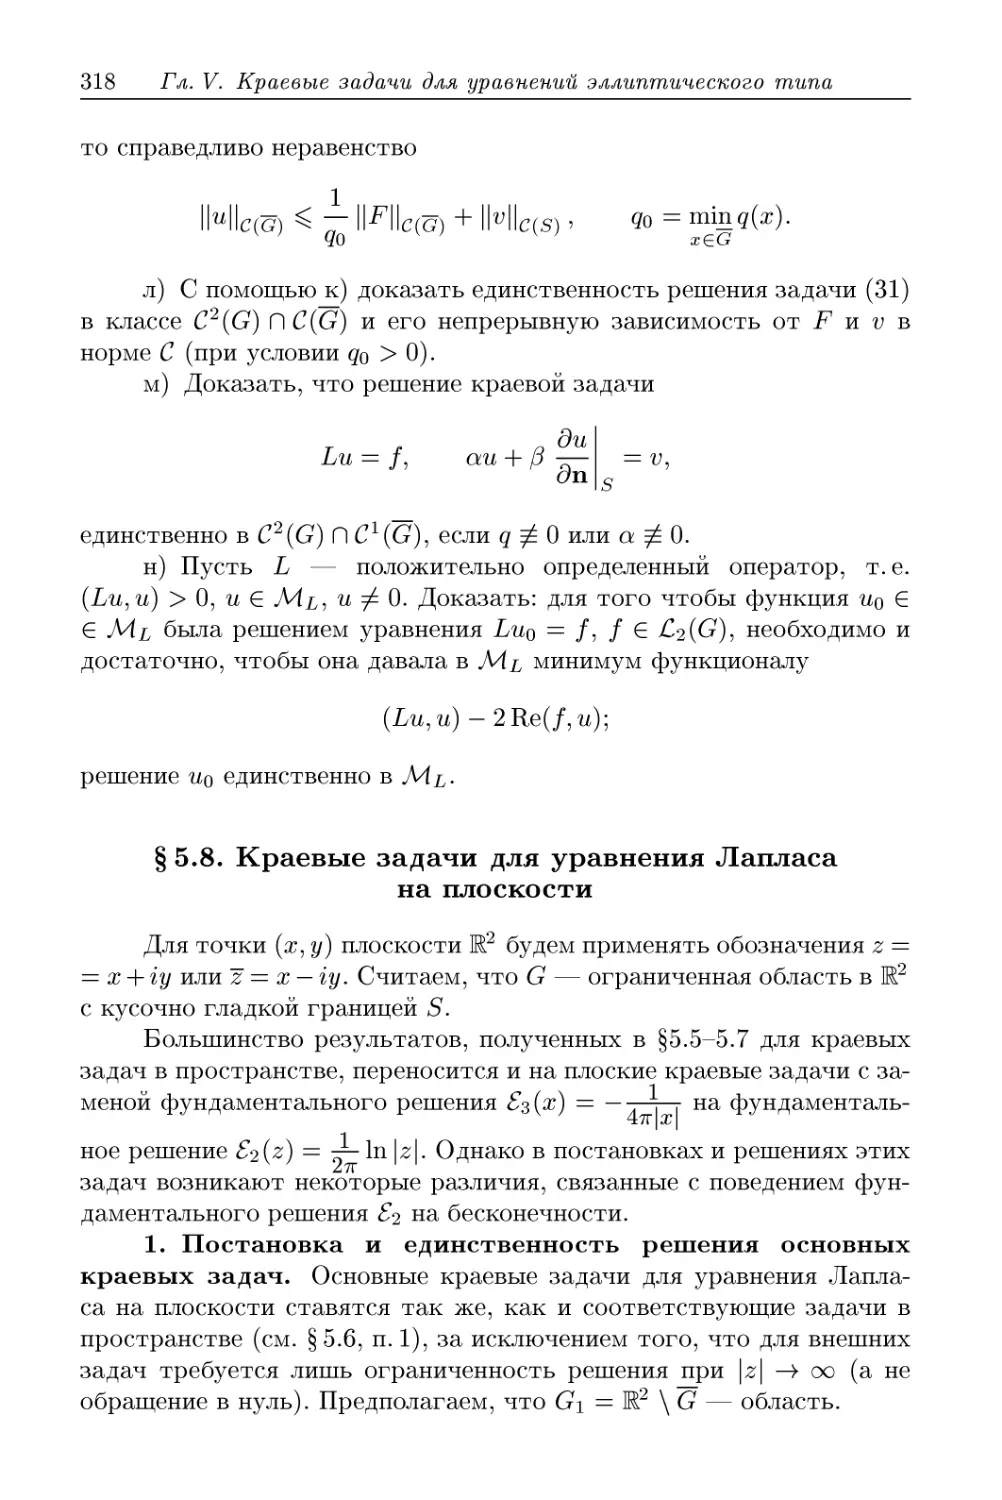 § 5.8. Краевые задачи для уравнения Лапласа на плоскости